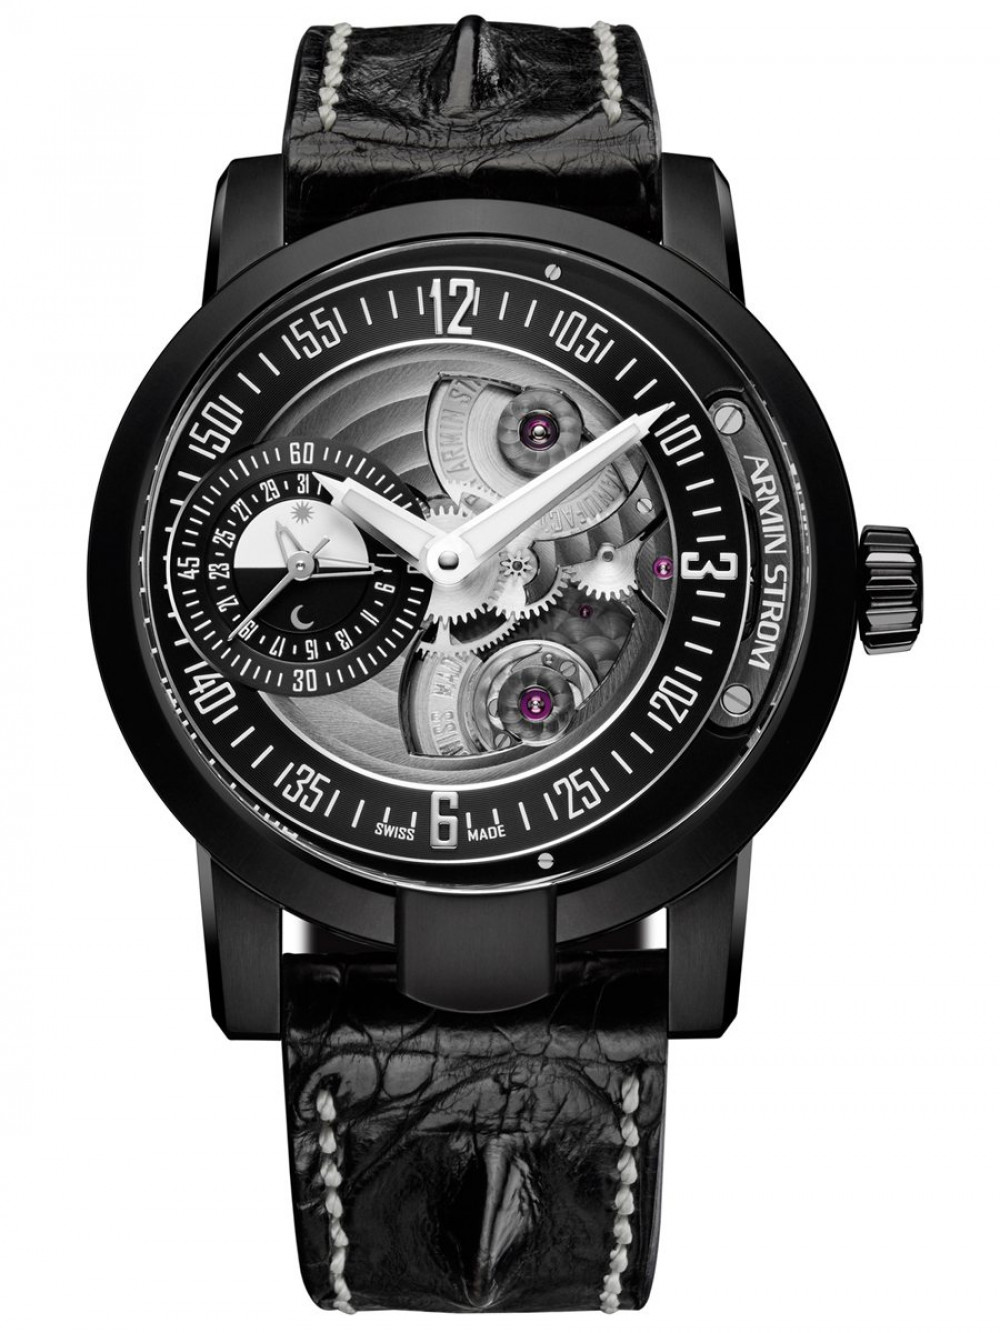 Zegarek firmy Armin Strom, model Gravity Date Earth